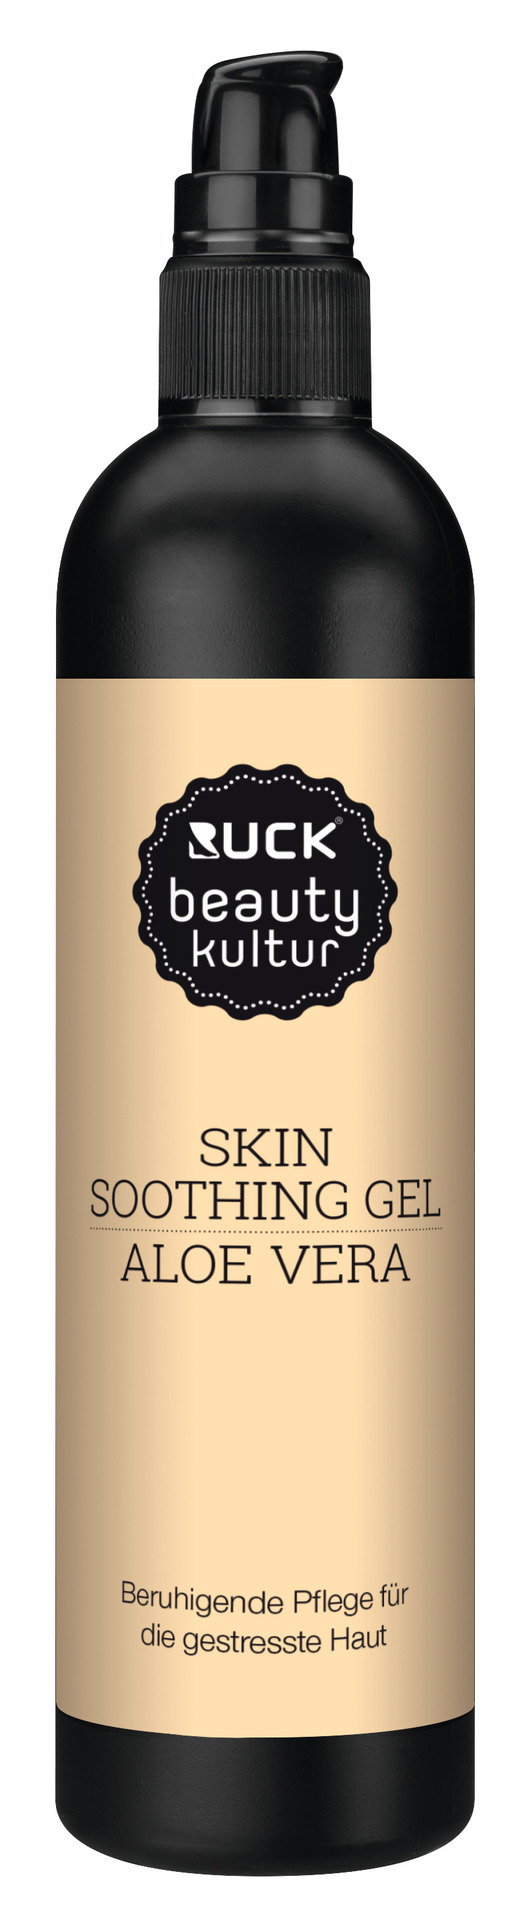 RUCK beautykultur SKIN soothing Gel | 200 ml